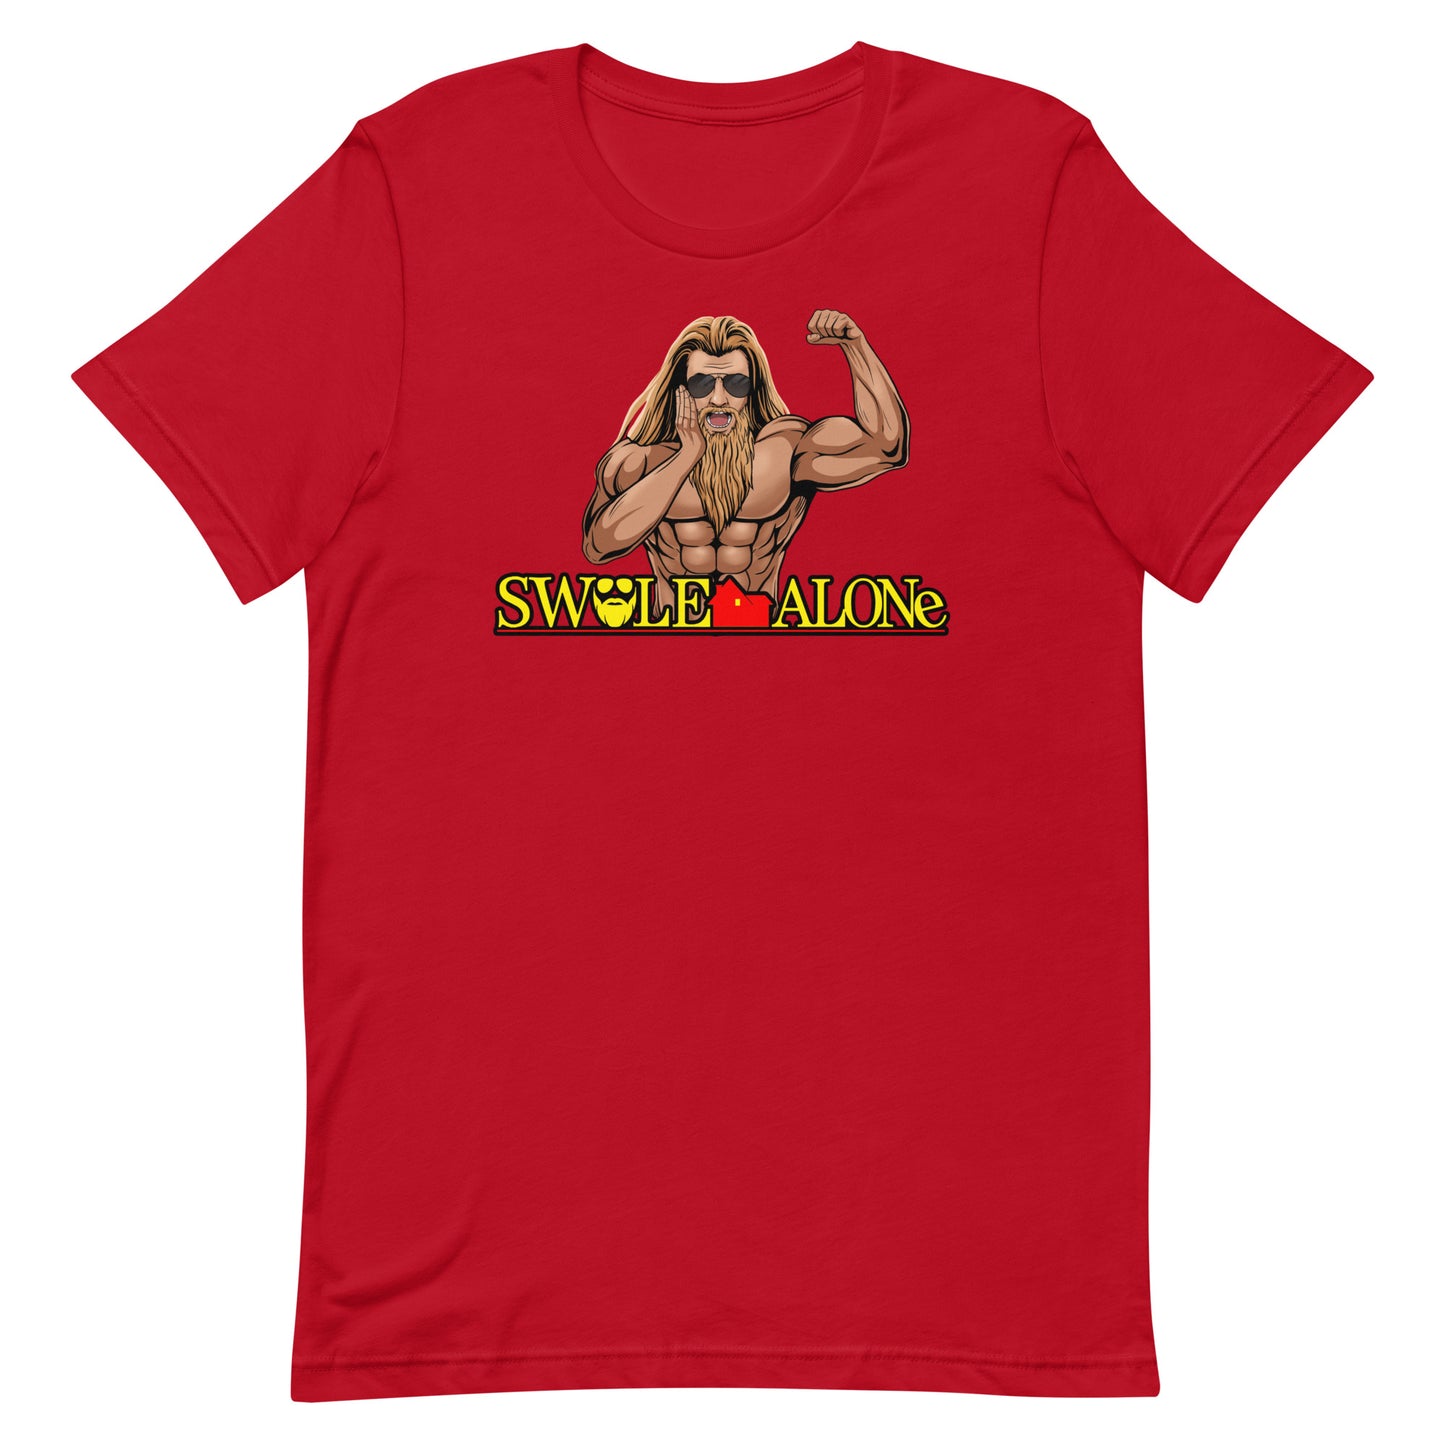 Swole Alone (Image) T-Shirt